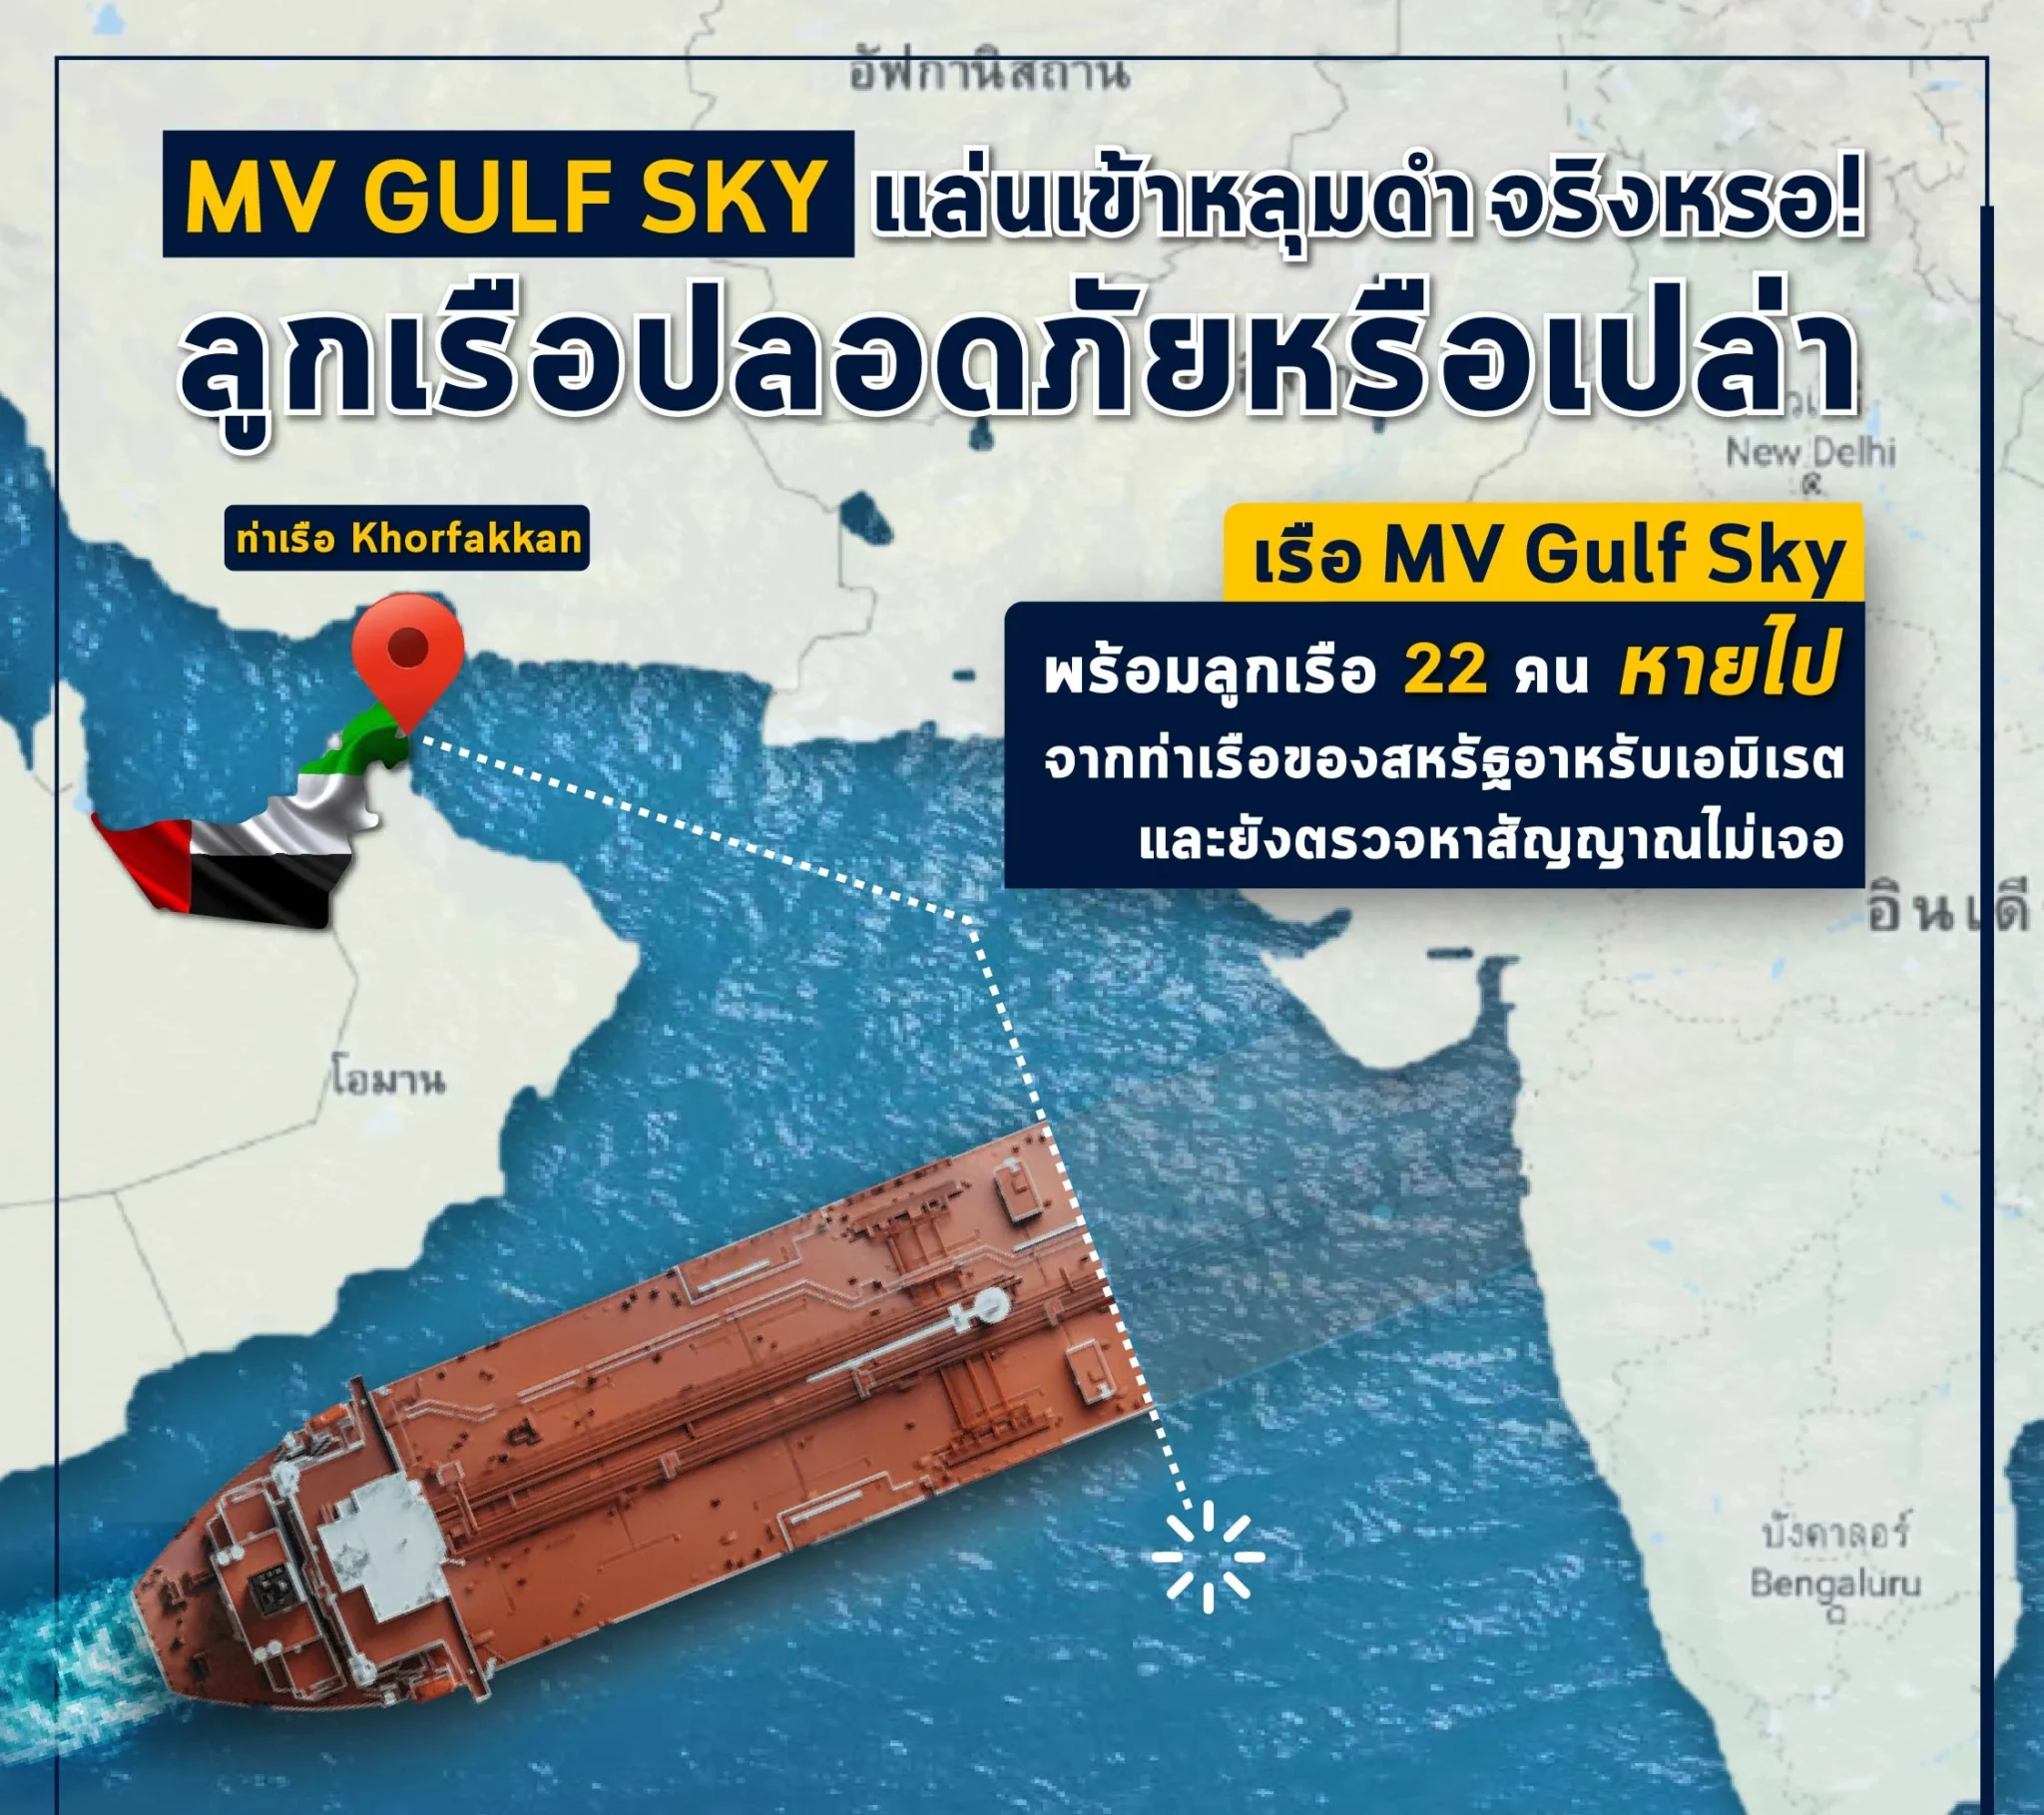 เรือ MV Gulf Sky หายเข้าหลุมดำ ห่วงก็แต่สวัสดิภาพเหล่าลูกเรือ